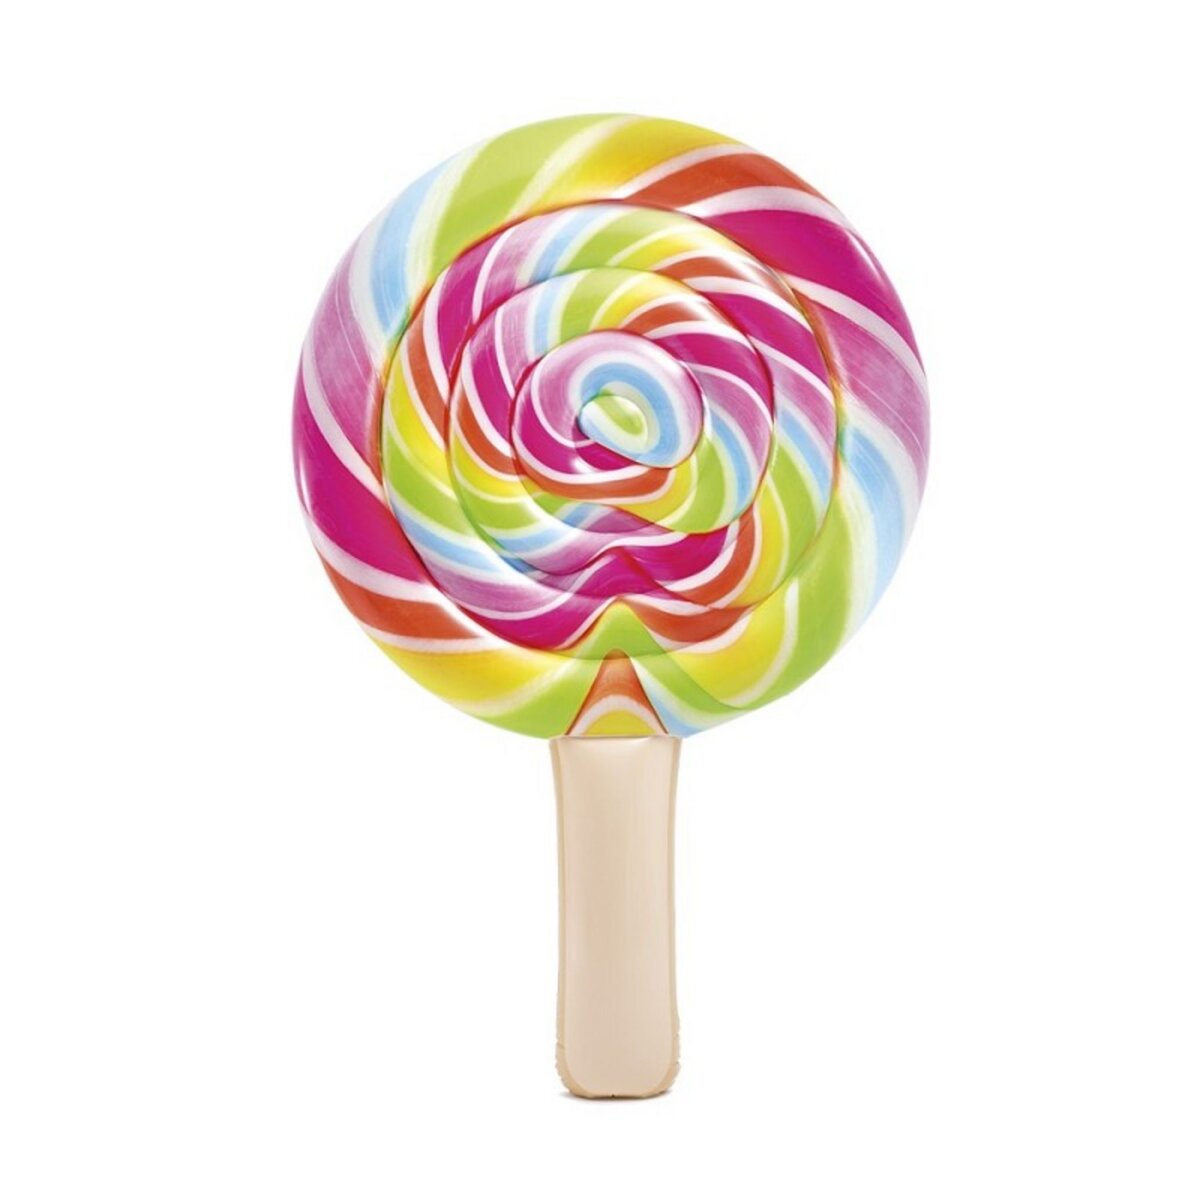 INTEX Matelas gonflable Lollipop - Sucette géante